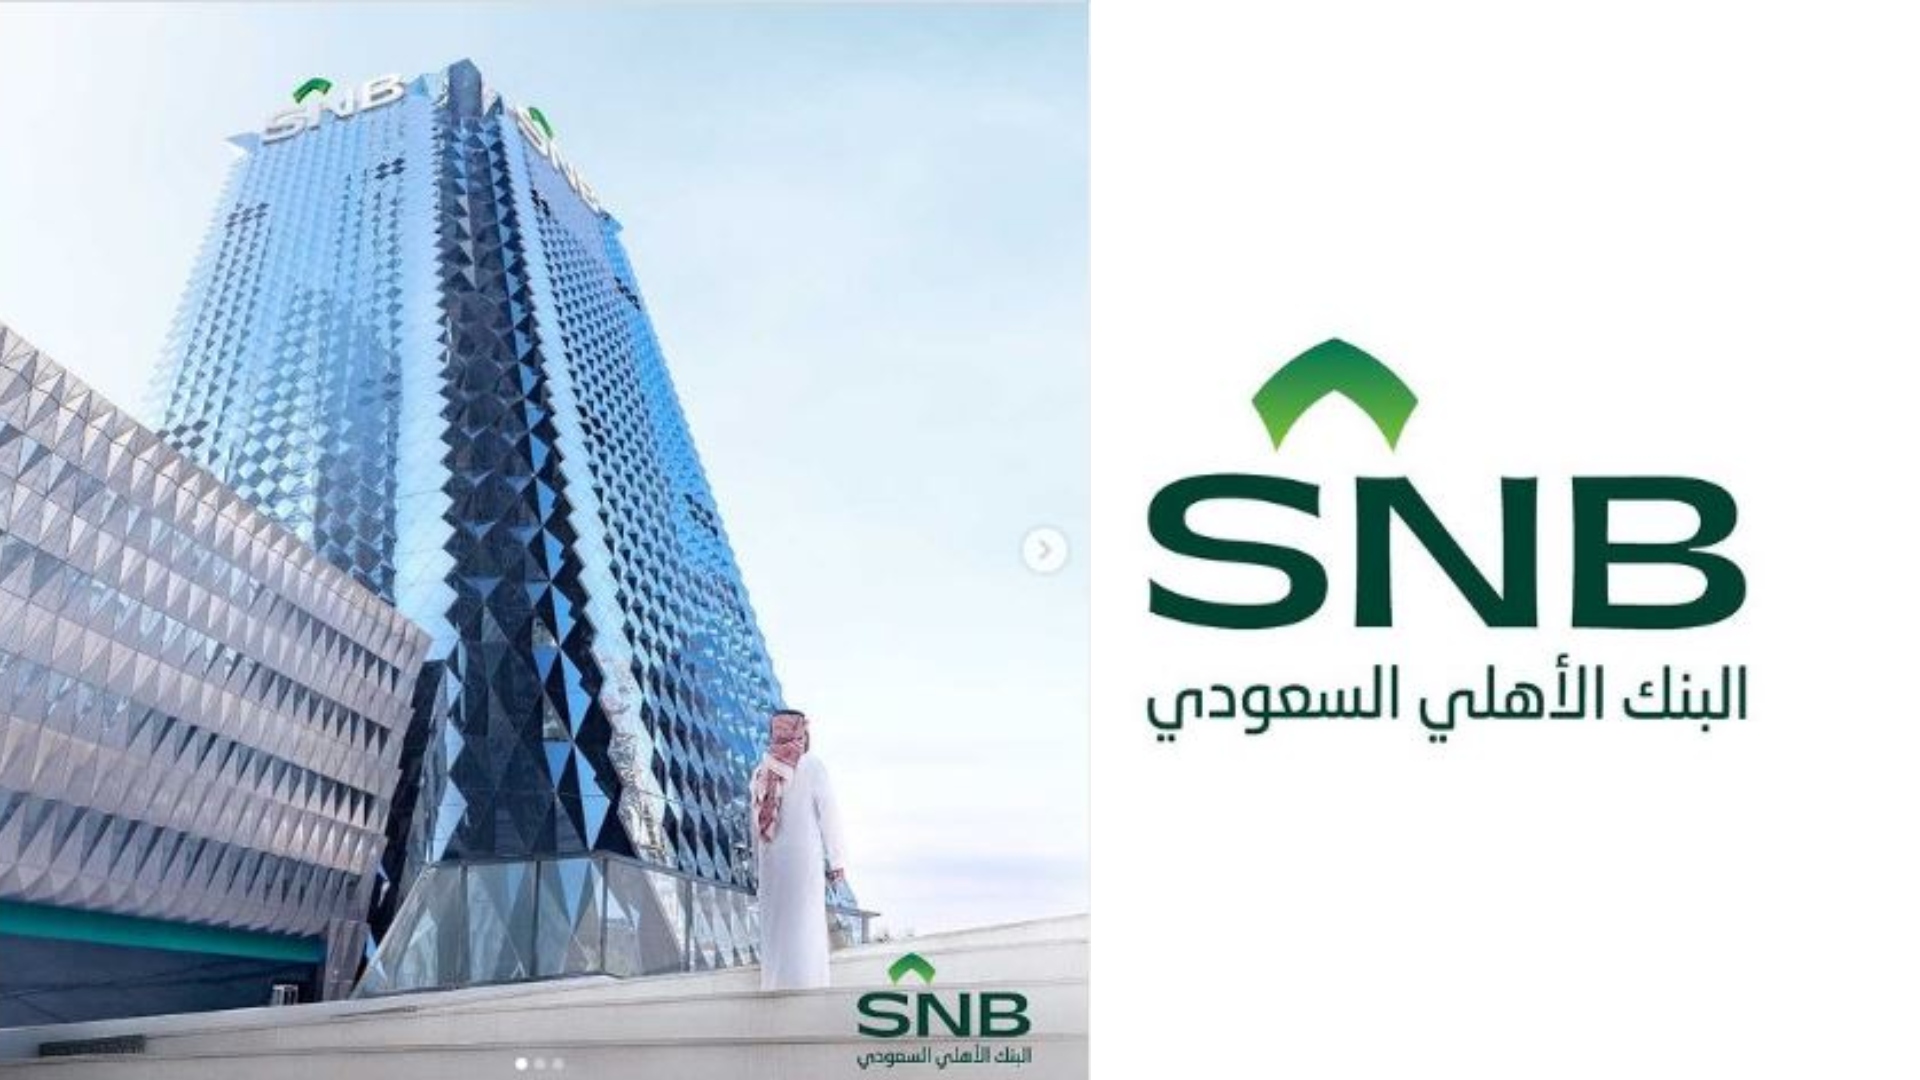 رقم البنك الأهلي المجاني الجديد في السعودية